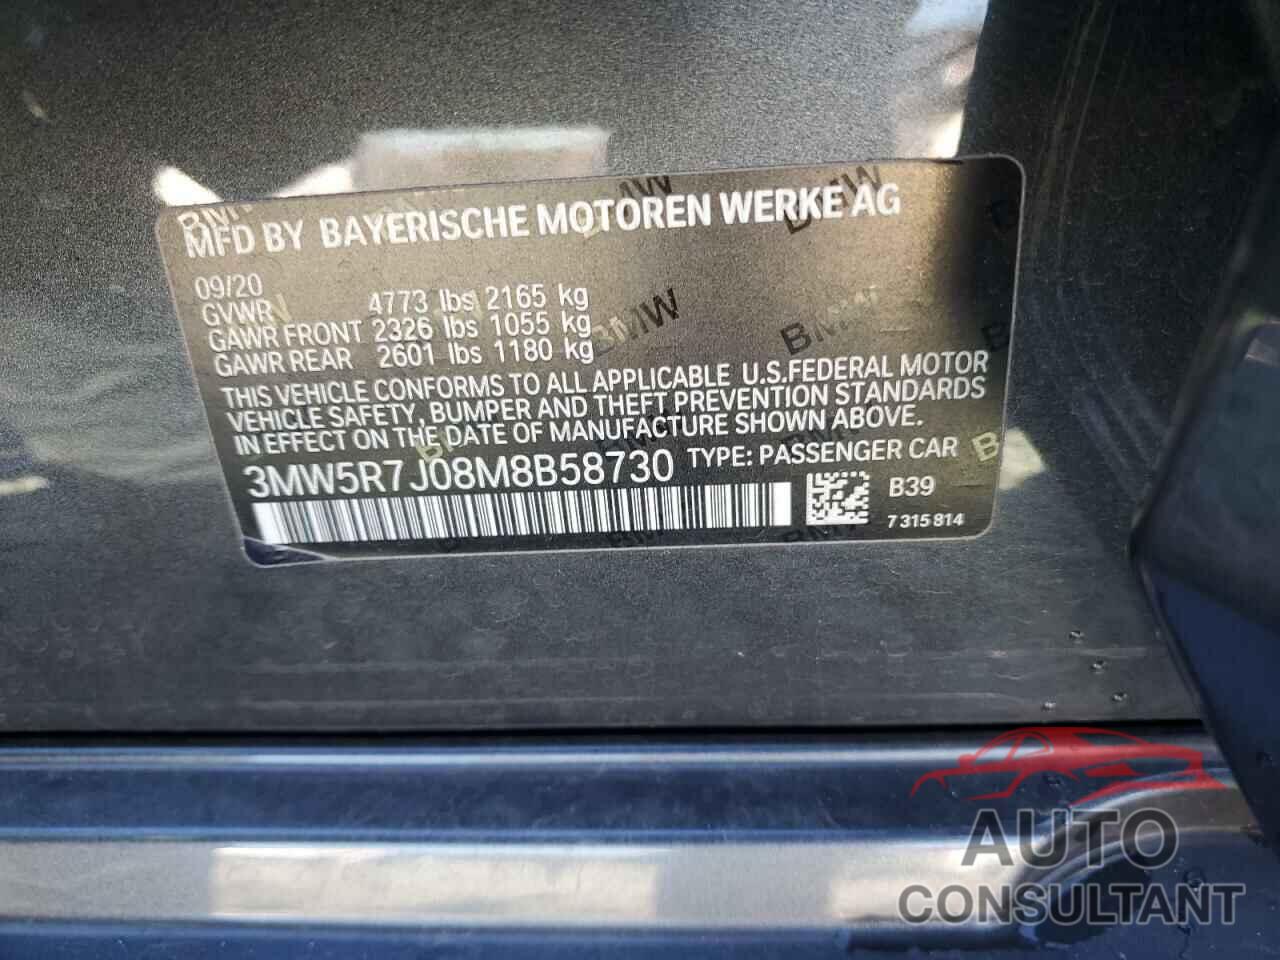 BMW 3 SERIES 2021 - 3MW5R7J08M8B58730